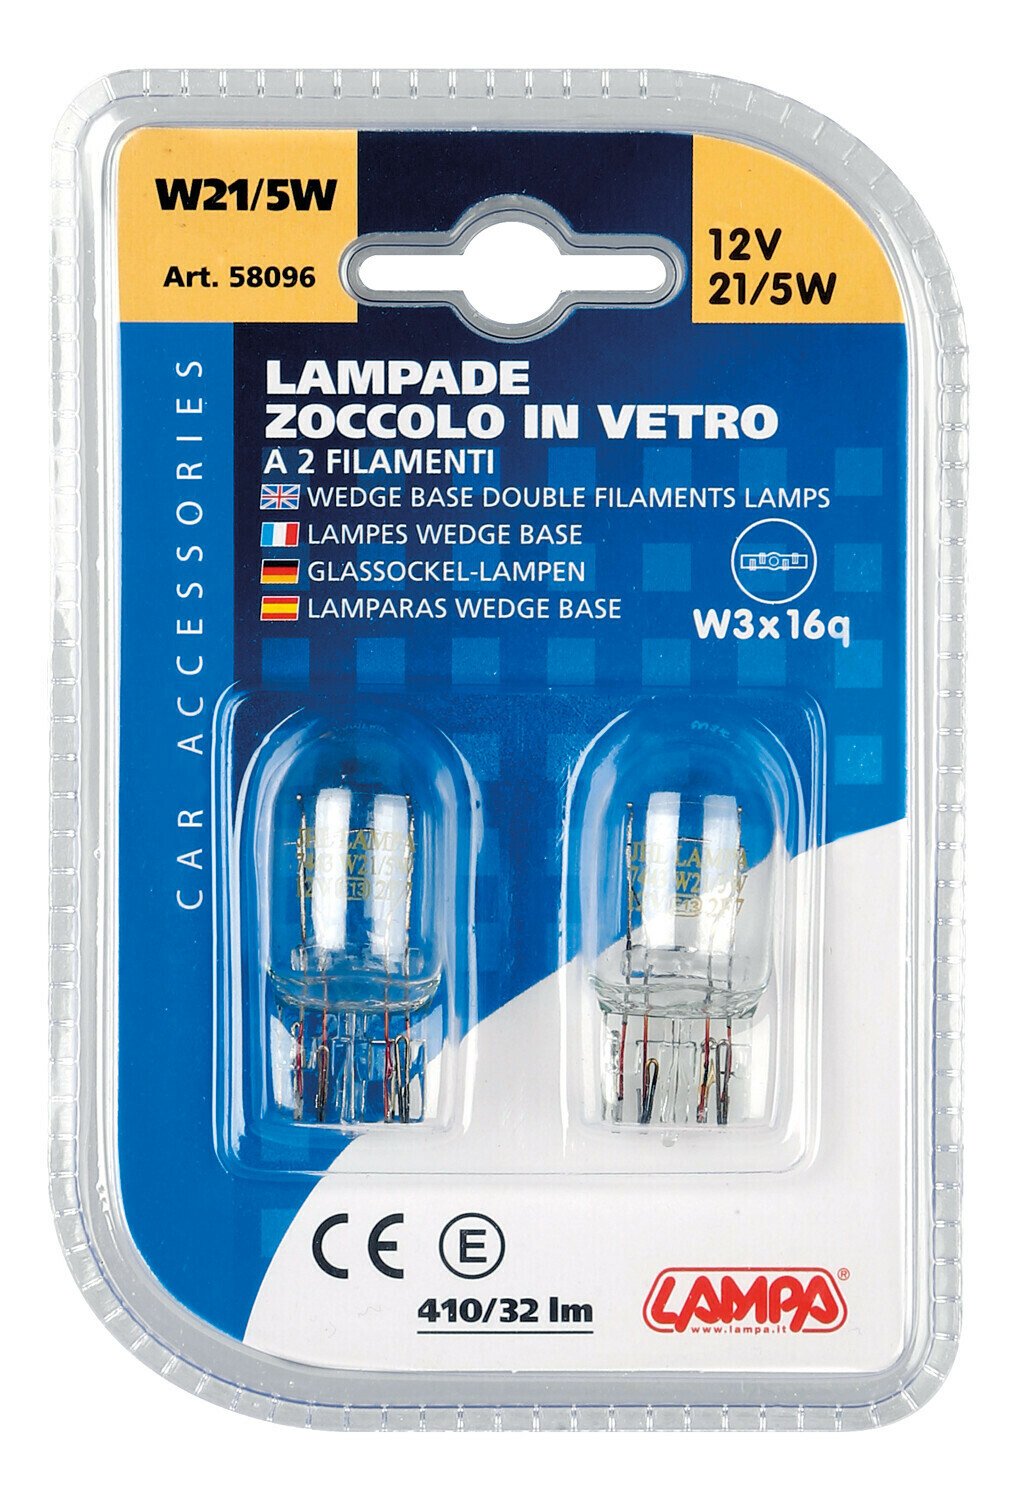 Bec 12V W21/5W - 21/5W pozitie si frana soclu sticla W3x16q 2buc Lampa thumb